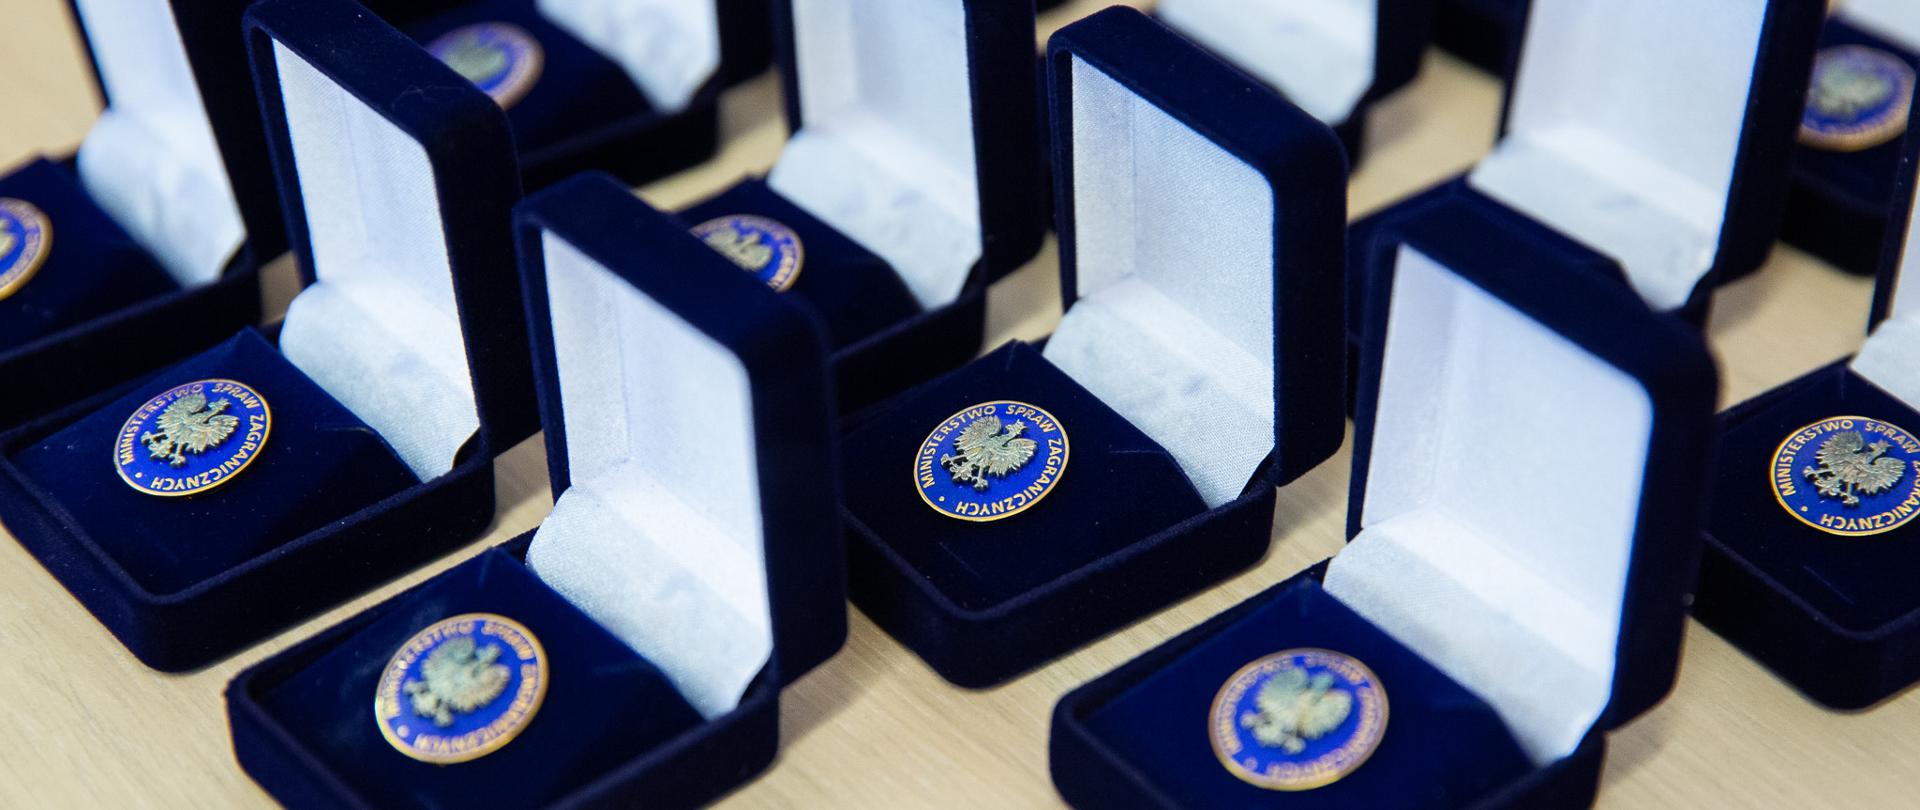 Wpinki Ministerstwa Spraw Zagranicznych w granatowych pudełkach, przygotowane do wręczenia absolwentom aplikacji dyplomatyczno-konsularnej po nadaniu pierwszego stopnia dyplomatycznego.